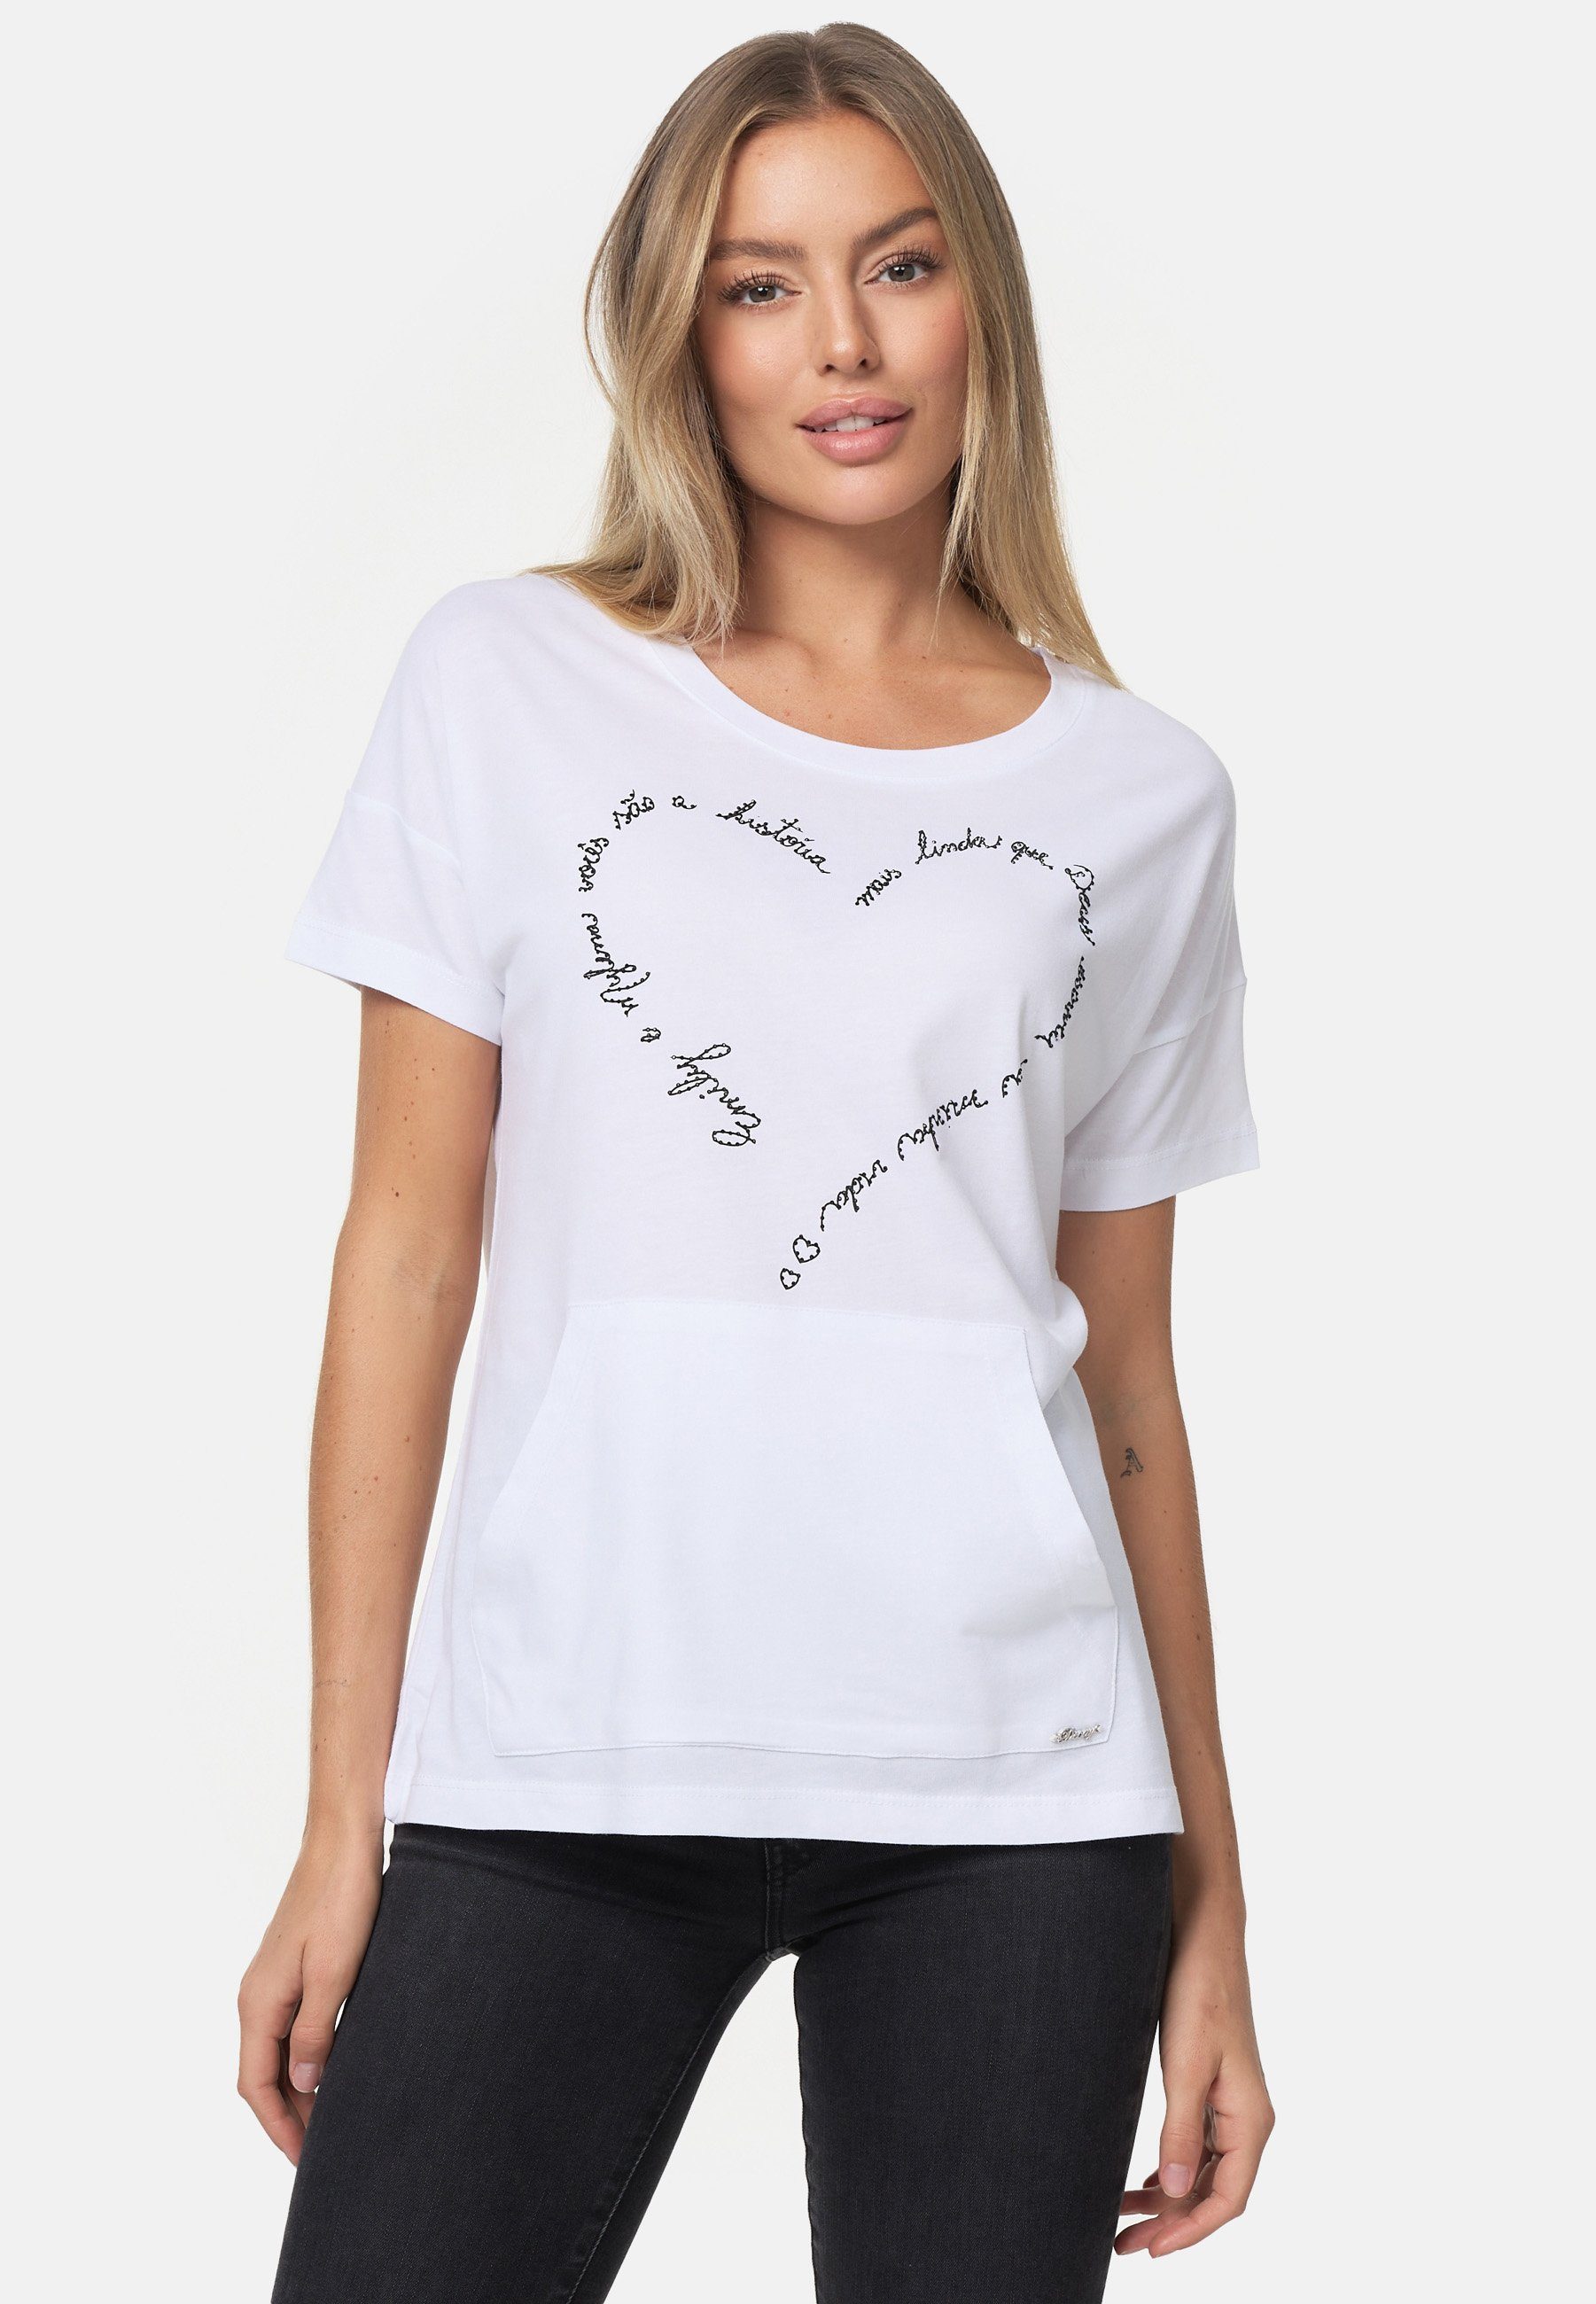 Decay mit Herz-Print schönem weiß-schwarz T-Shirt